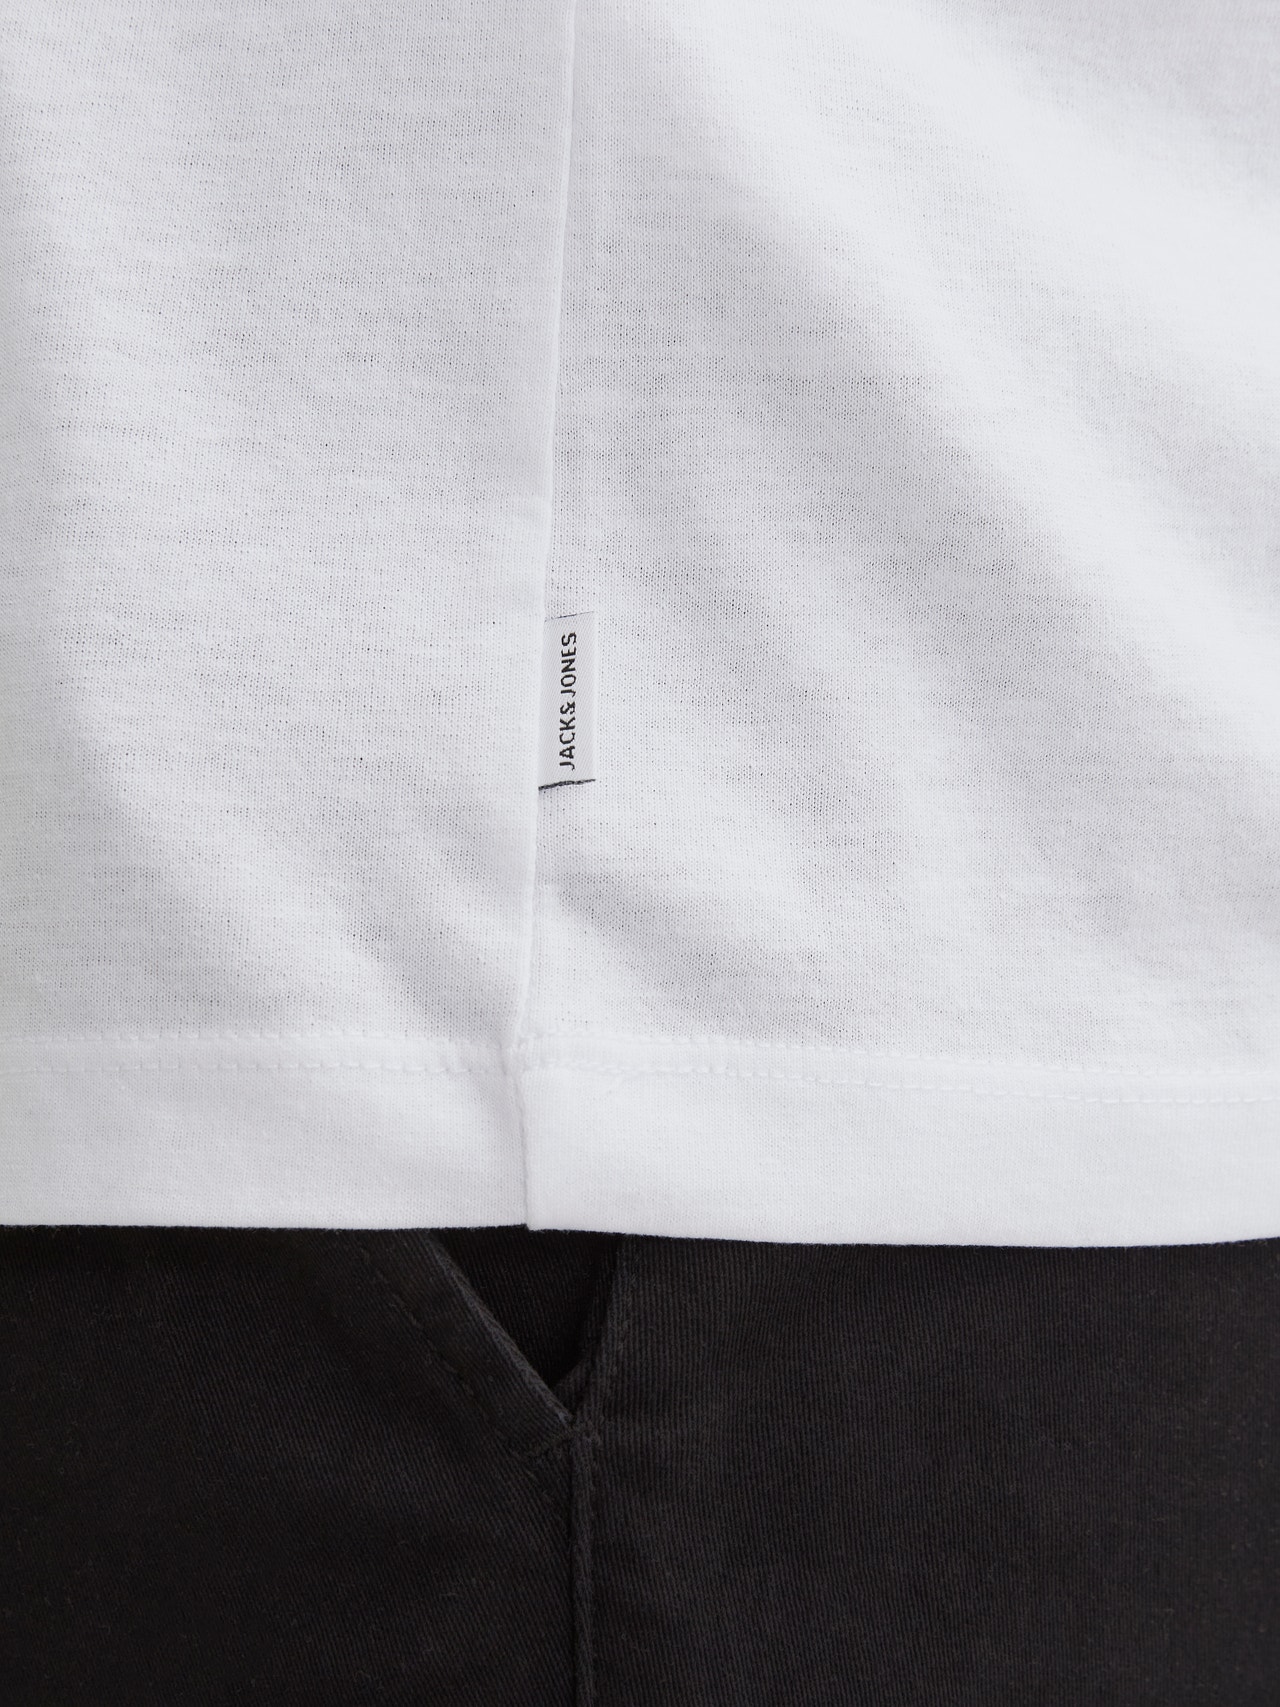 Jack & Jones Plus Size T-shirt Imprimé -White - 12254902